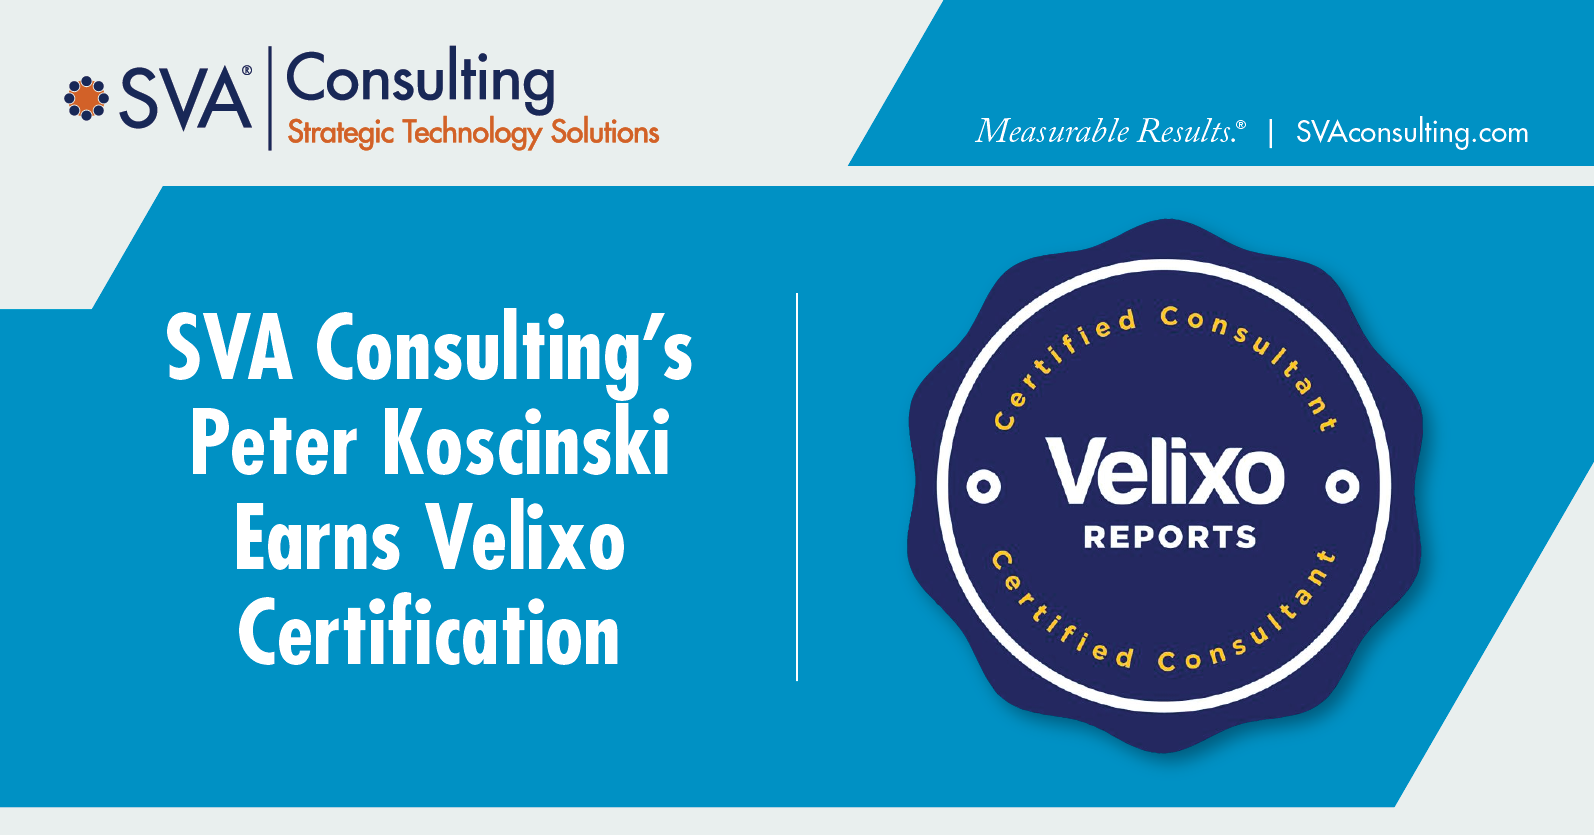 SVA Consulting’s Peter Koscinski Earns Velixo Certification